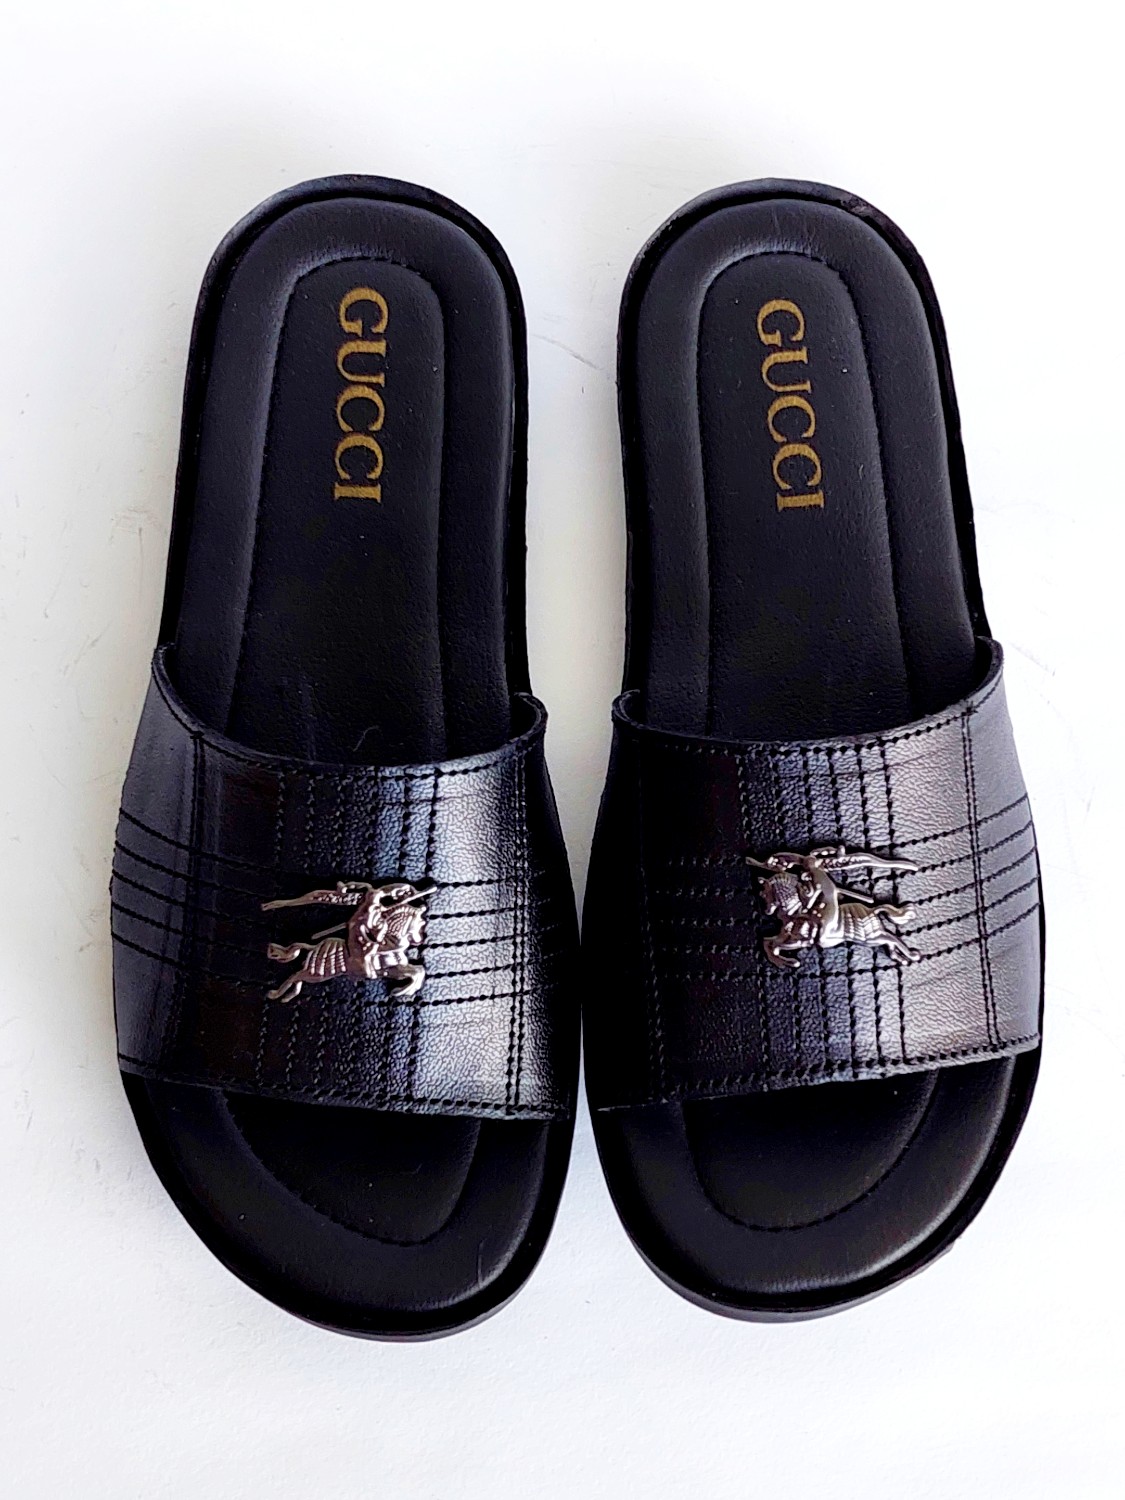 FGUC05-Branded Luxury Slippers Slides For Men - Frenzy